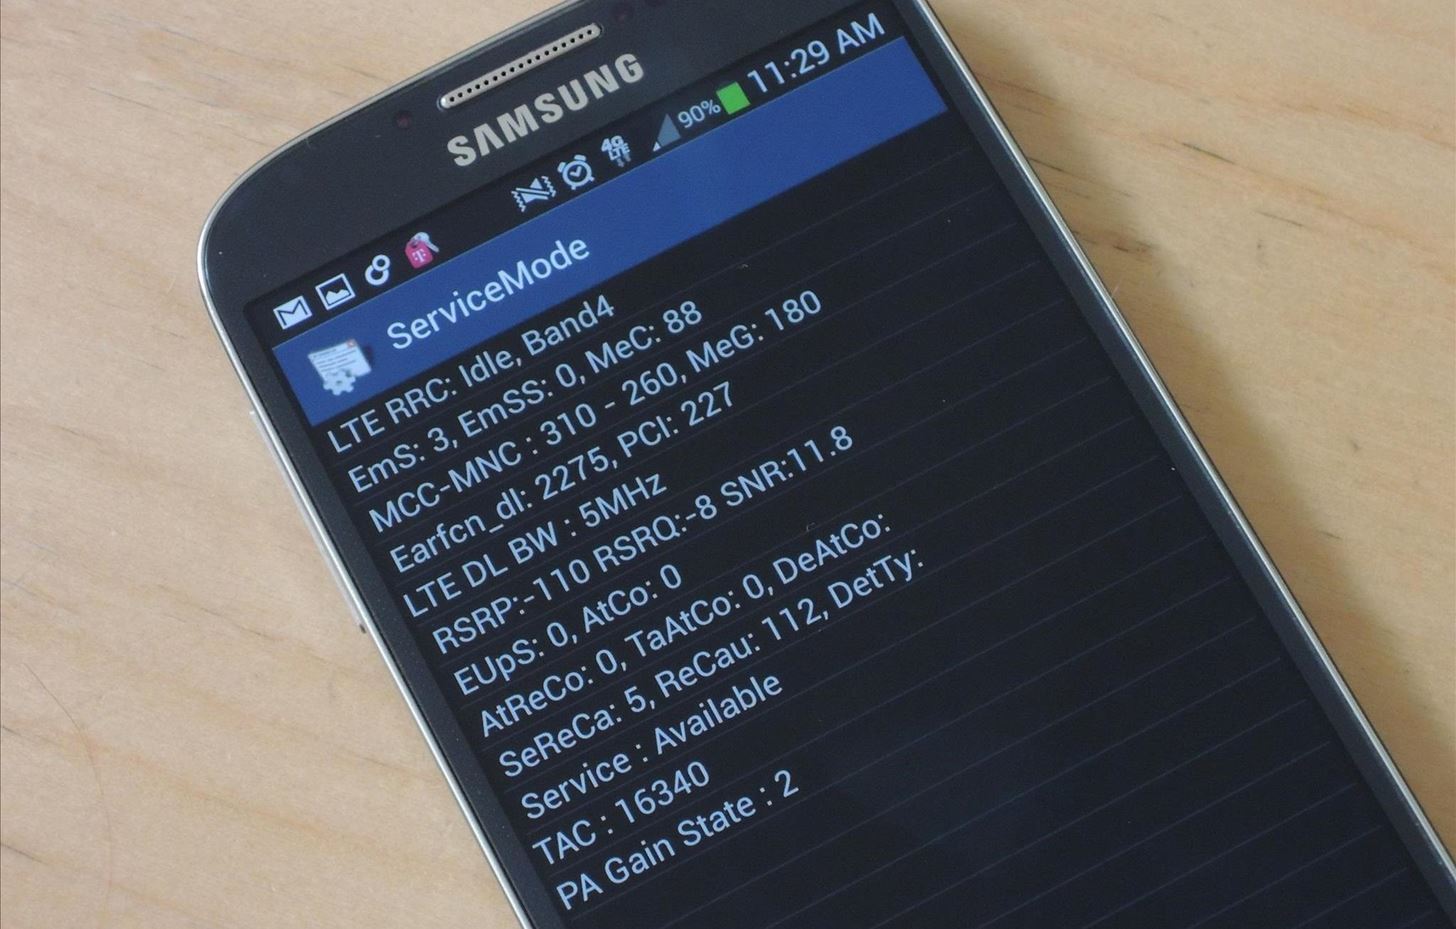 UNLOCK PIN SERVICE AT&T Samsung Galaxy S4 Active SGH-I537 